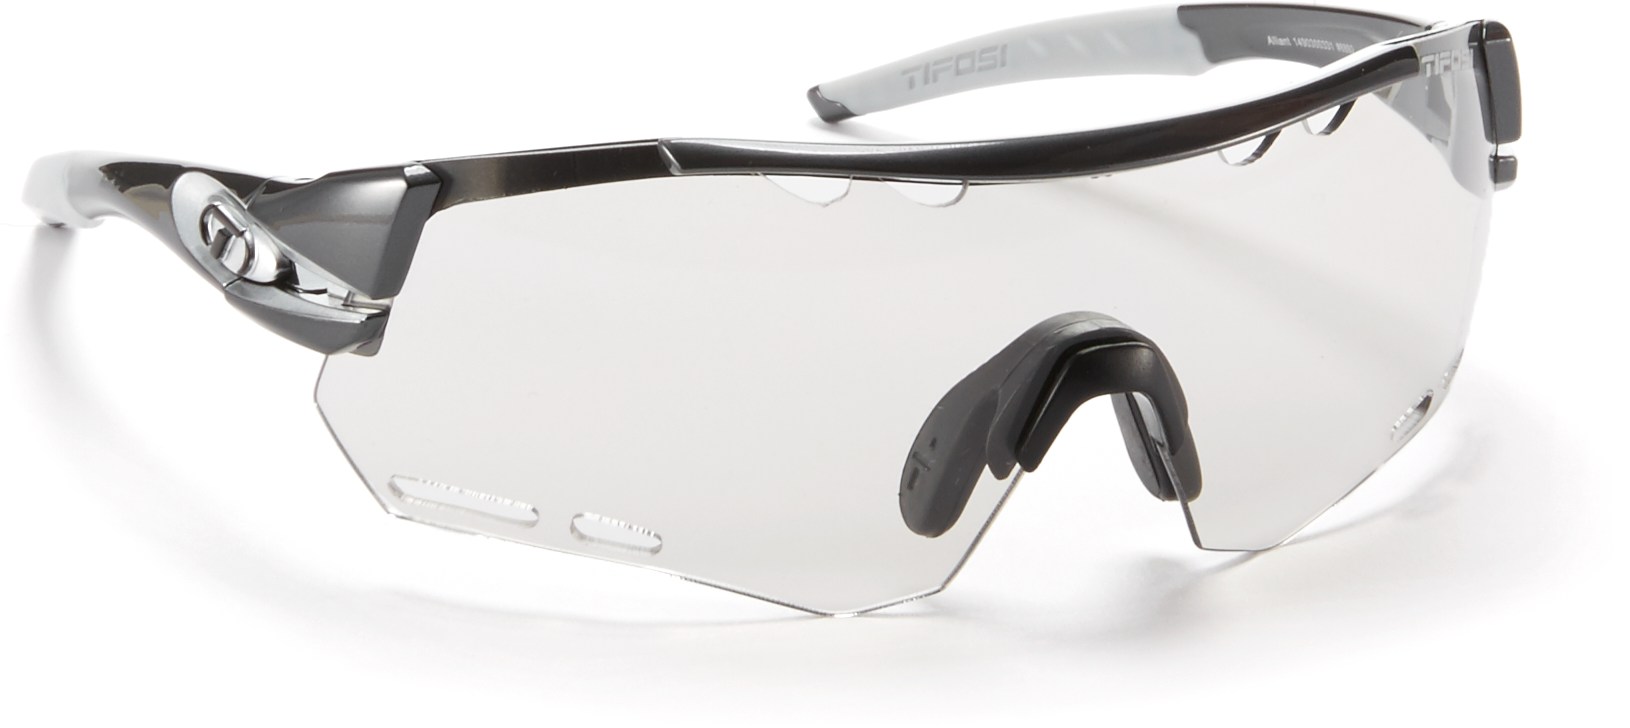 очки велосипедные e22 со сменными линзами в кейсе цвет синий Солнцезащитные очки Alliant Tifosi, серый